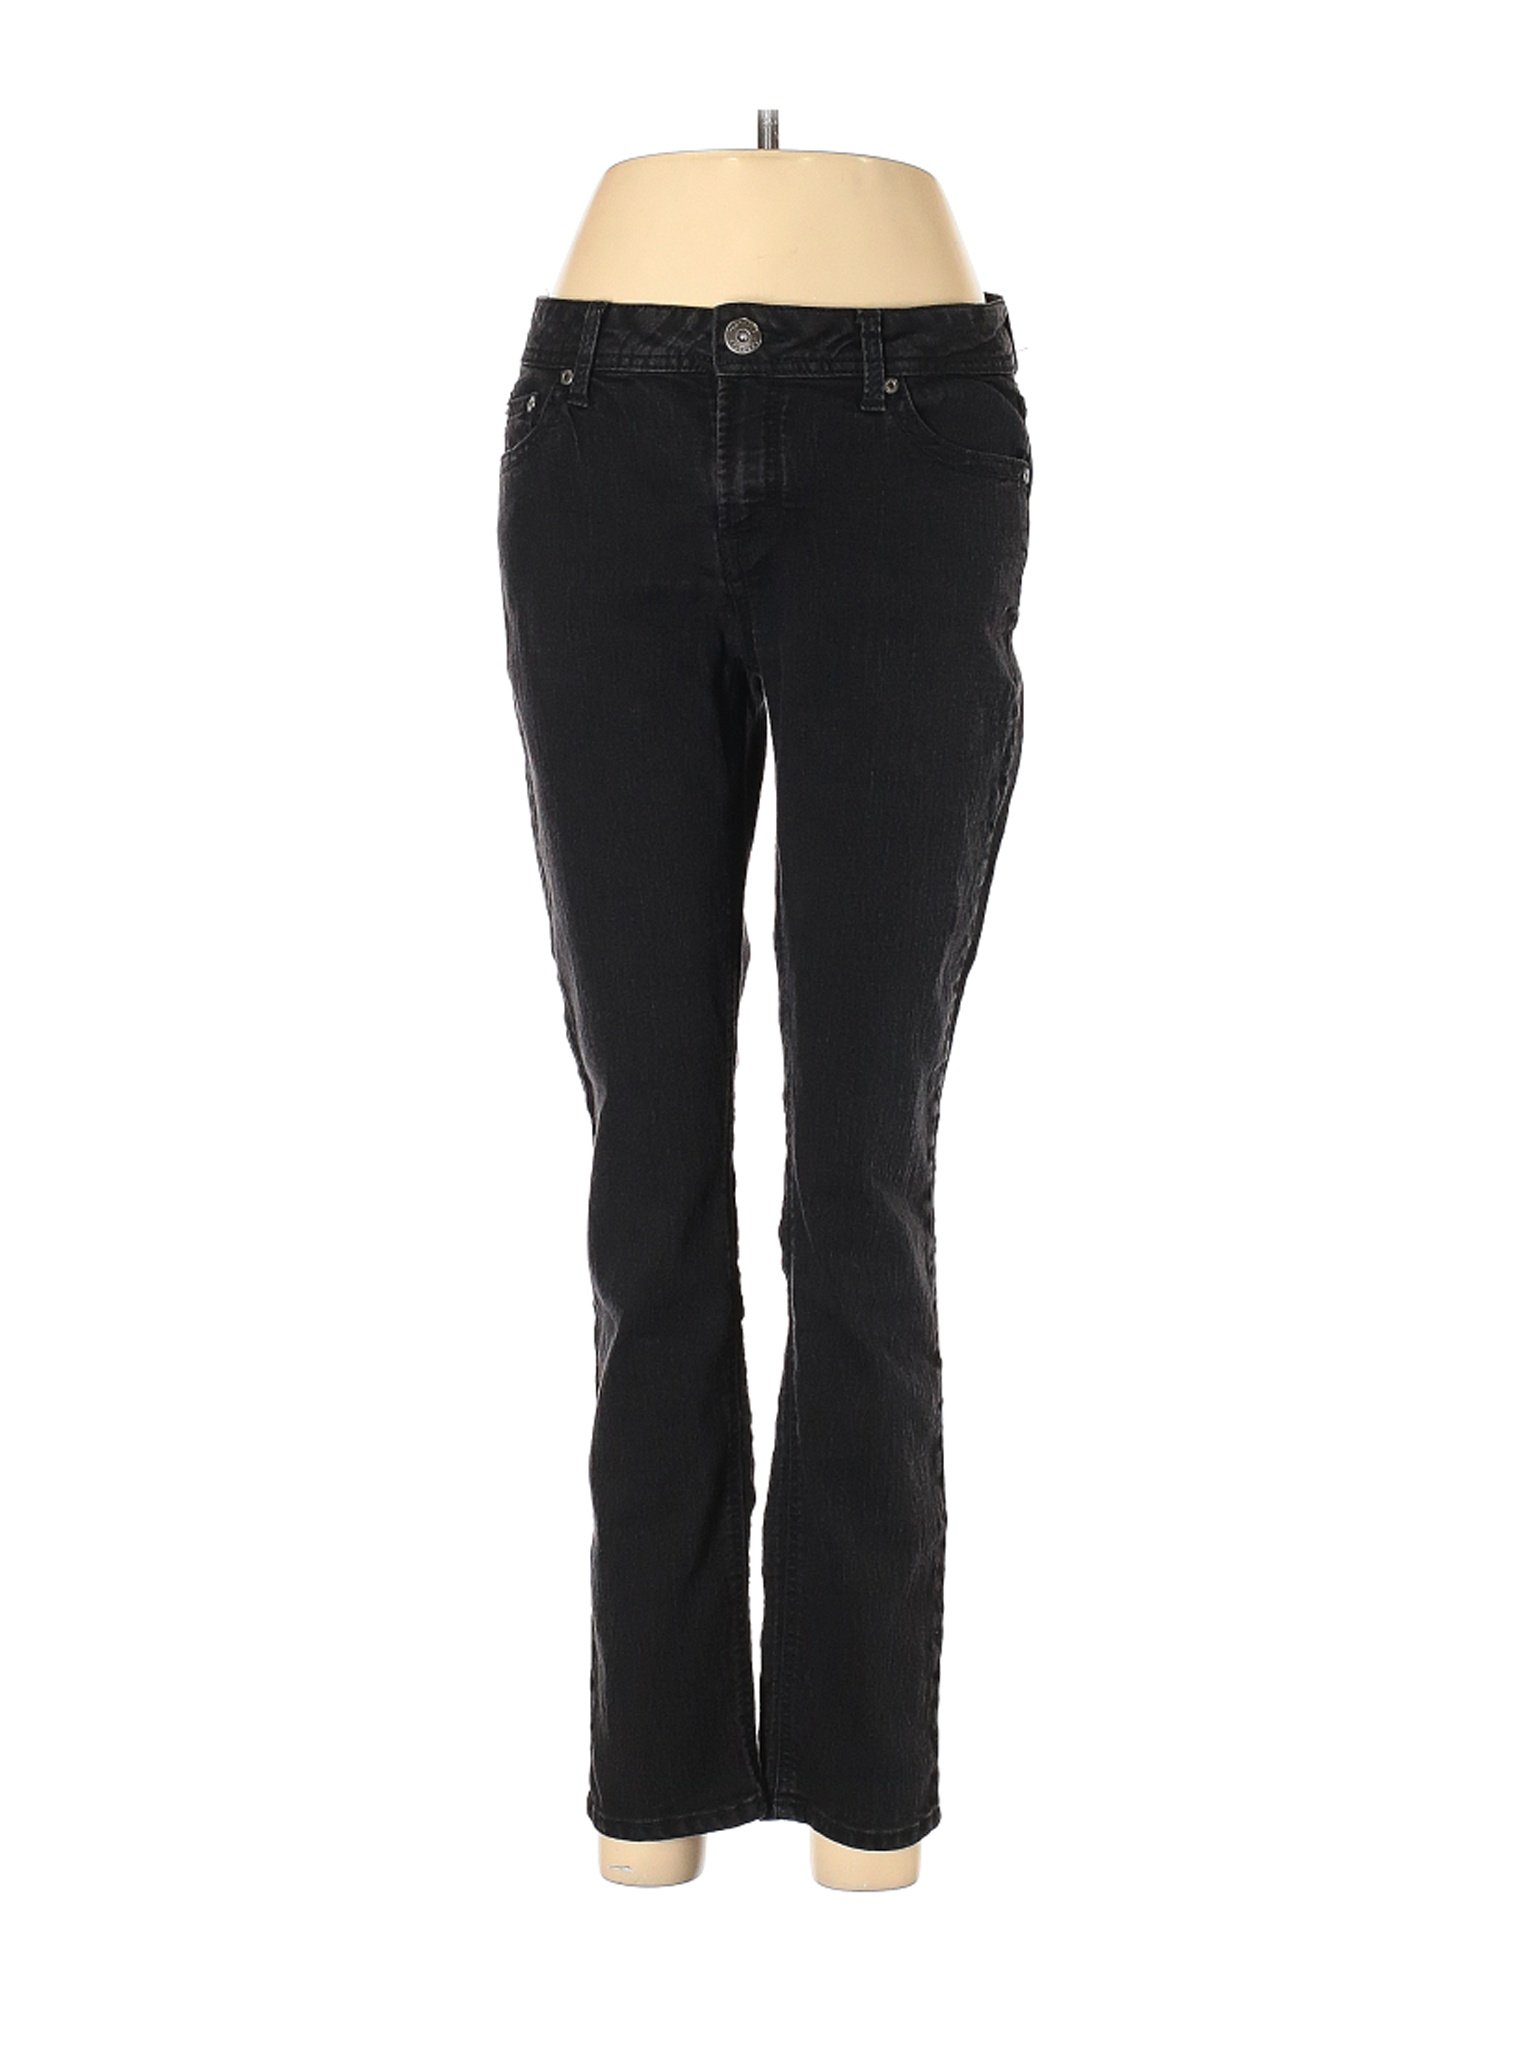 Jordache Women Black Jeans 8 | eBay